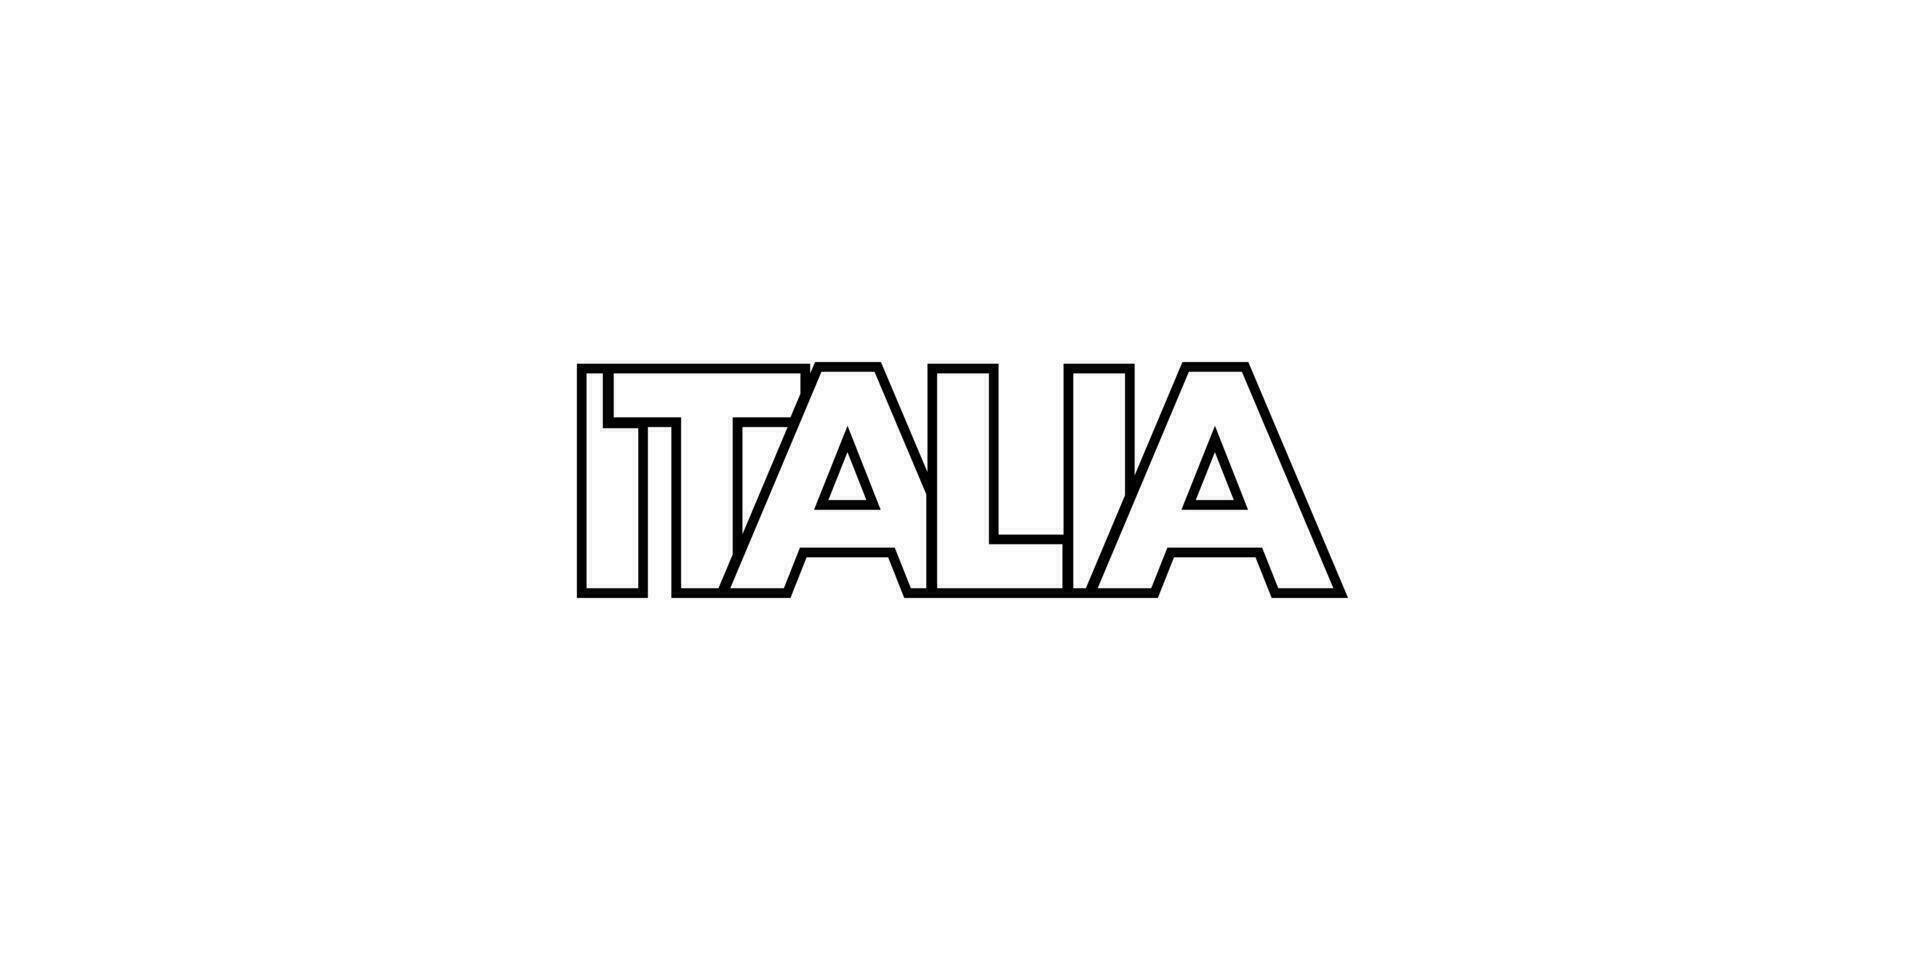 italia embleem. de ontwerp Kenmerken een meetkundig stijl, vector illustratie met stoutmoedig typografie in een modern lettertype. de grafisch leuze belettering.